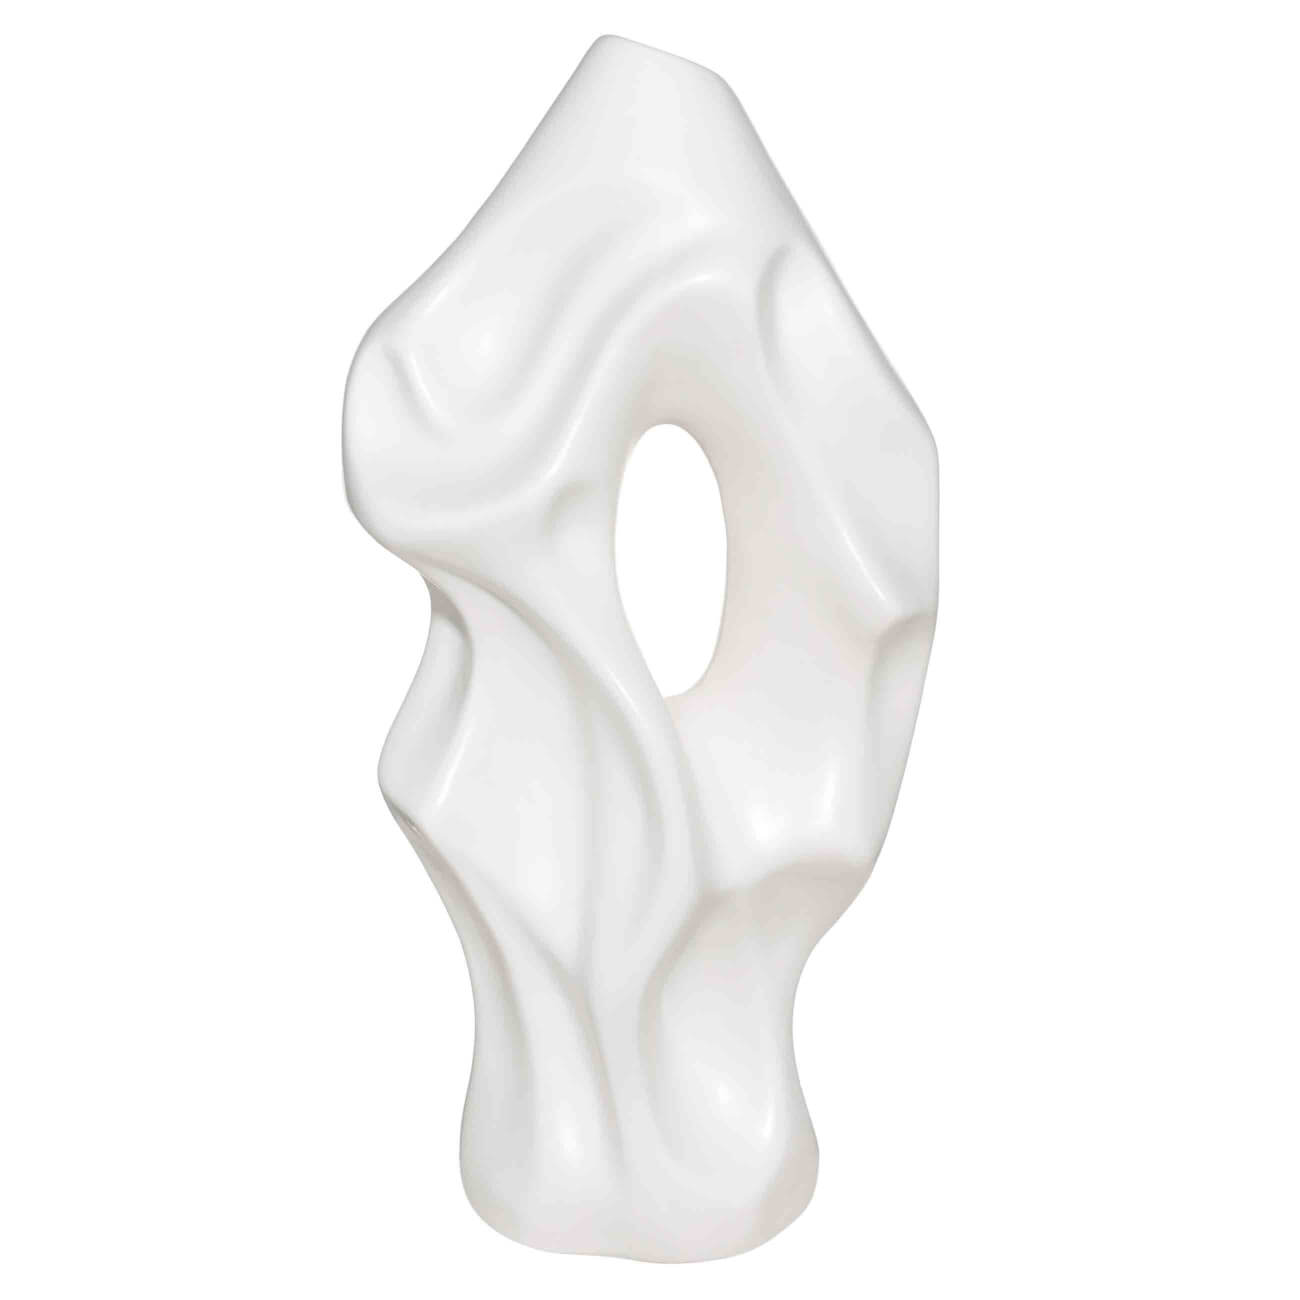 Flower vase, 37 cm, decorative, ceramic, white, Crumpled effect, Crumple изображение № 1